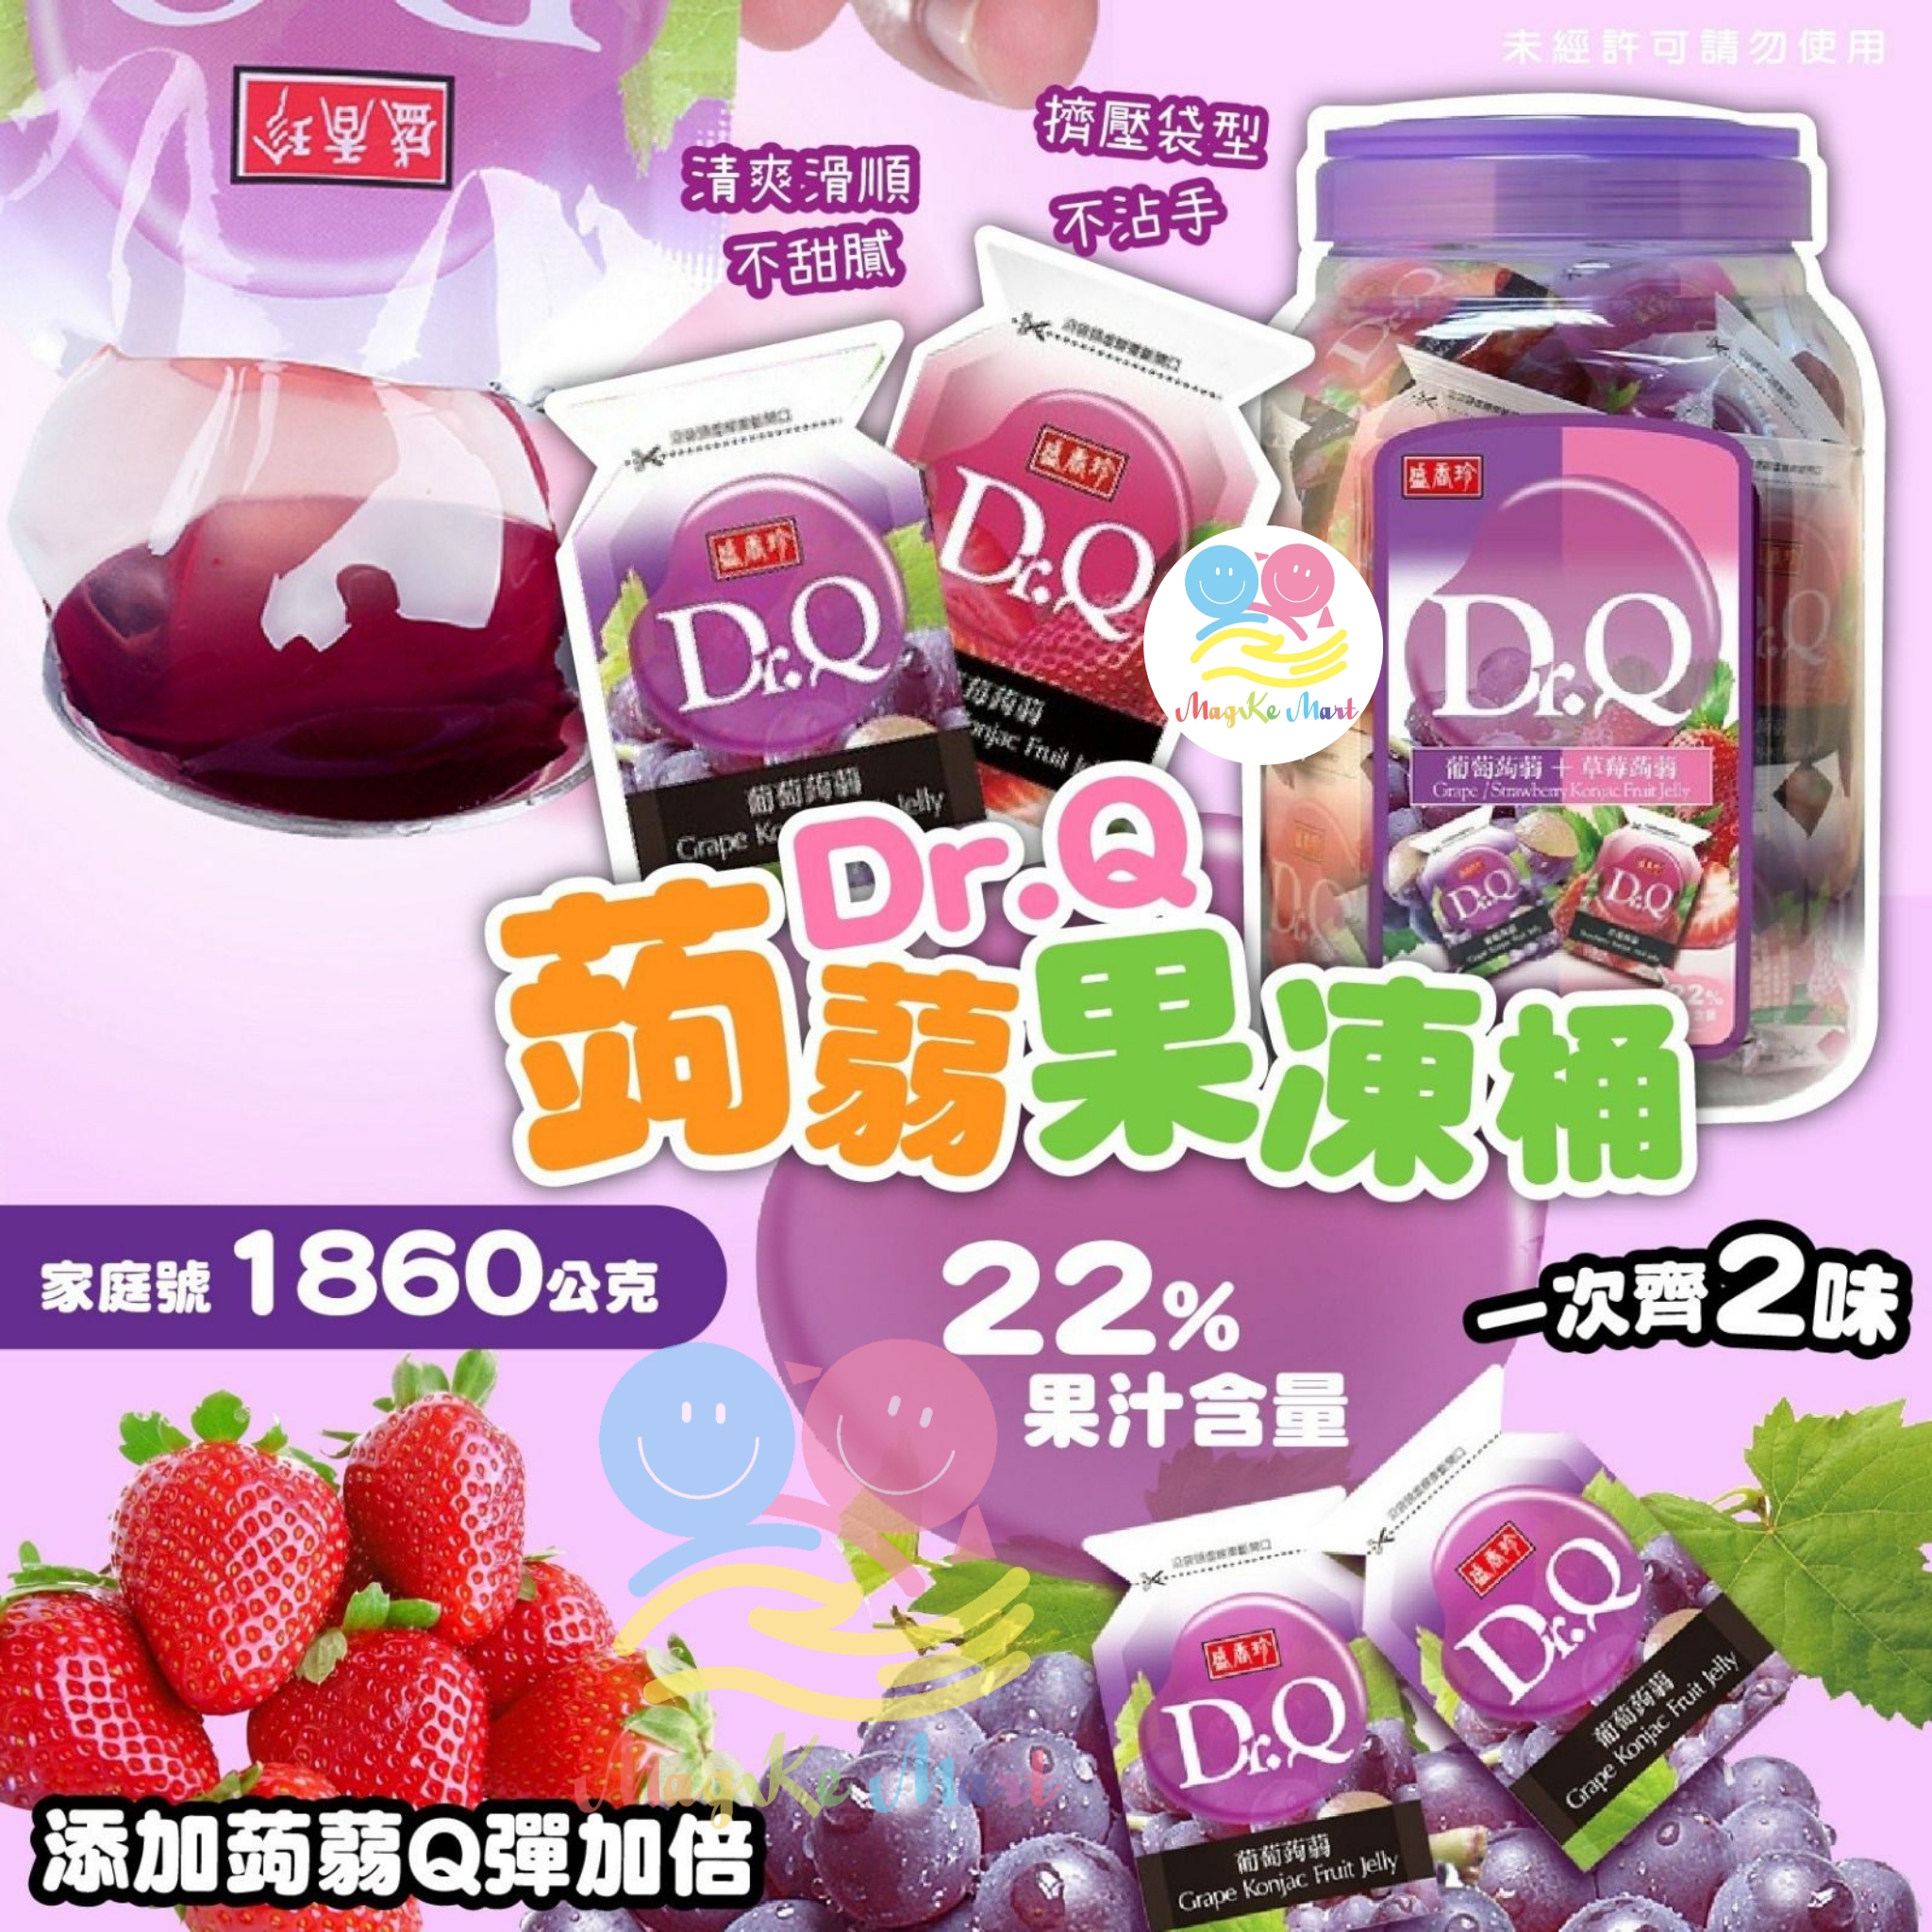 台灣盛香珍 Dr.Q 葡萄草莓蒟蒻果凍 1860g